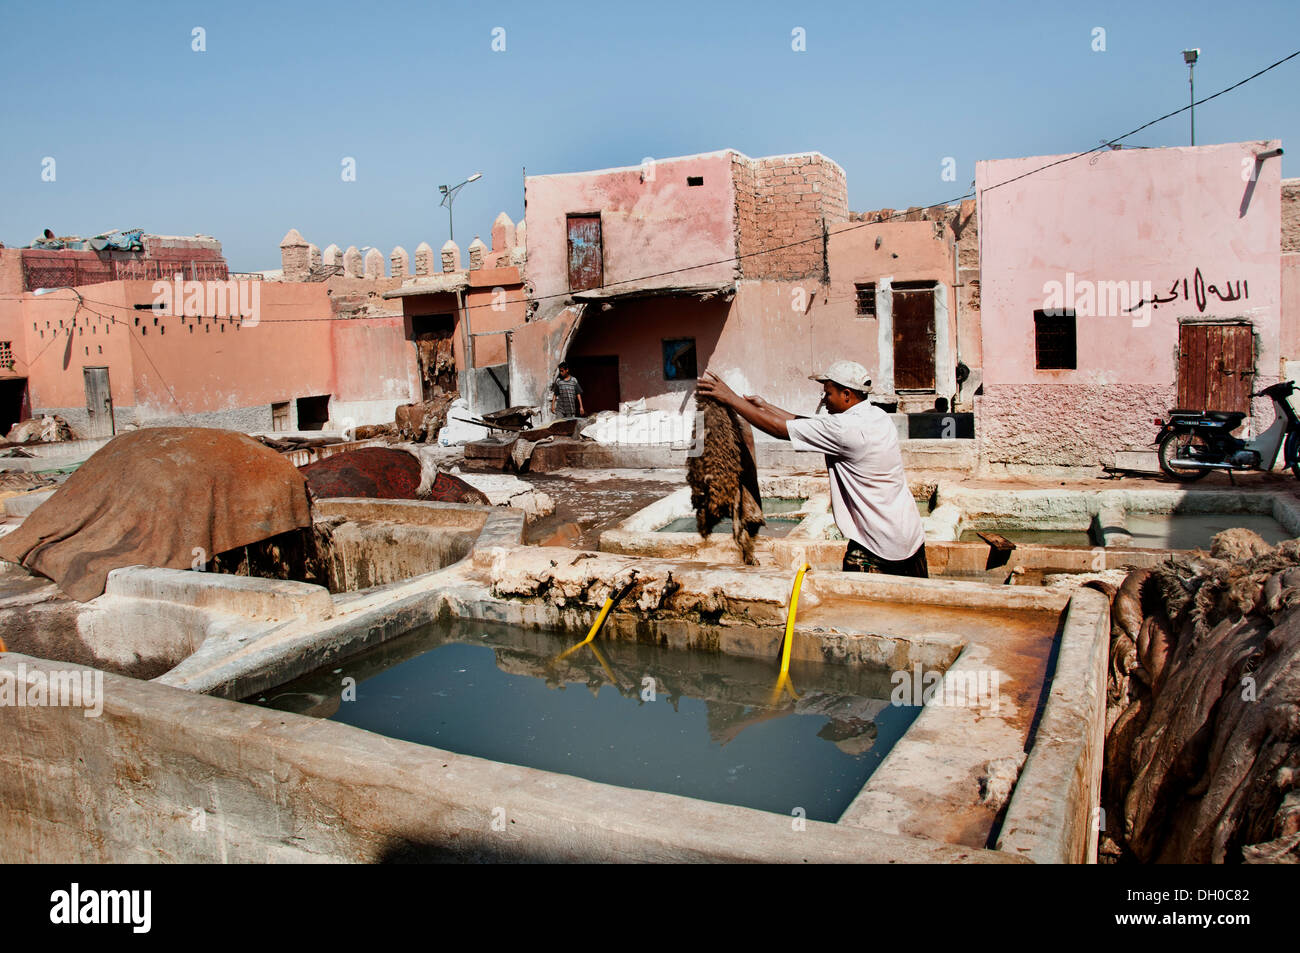 Concerie conceria ( ) in pelle e per la lavorazione della pelle esterna tini di abbronzatura a nord del quartiere Medina Marrakech Marocco Africa del Nord Foto Stock